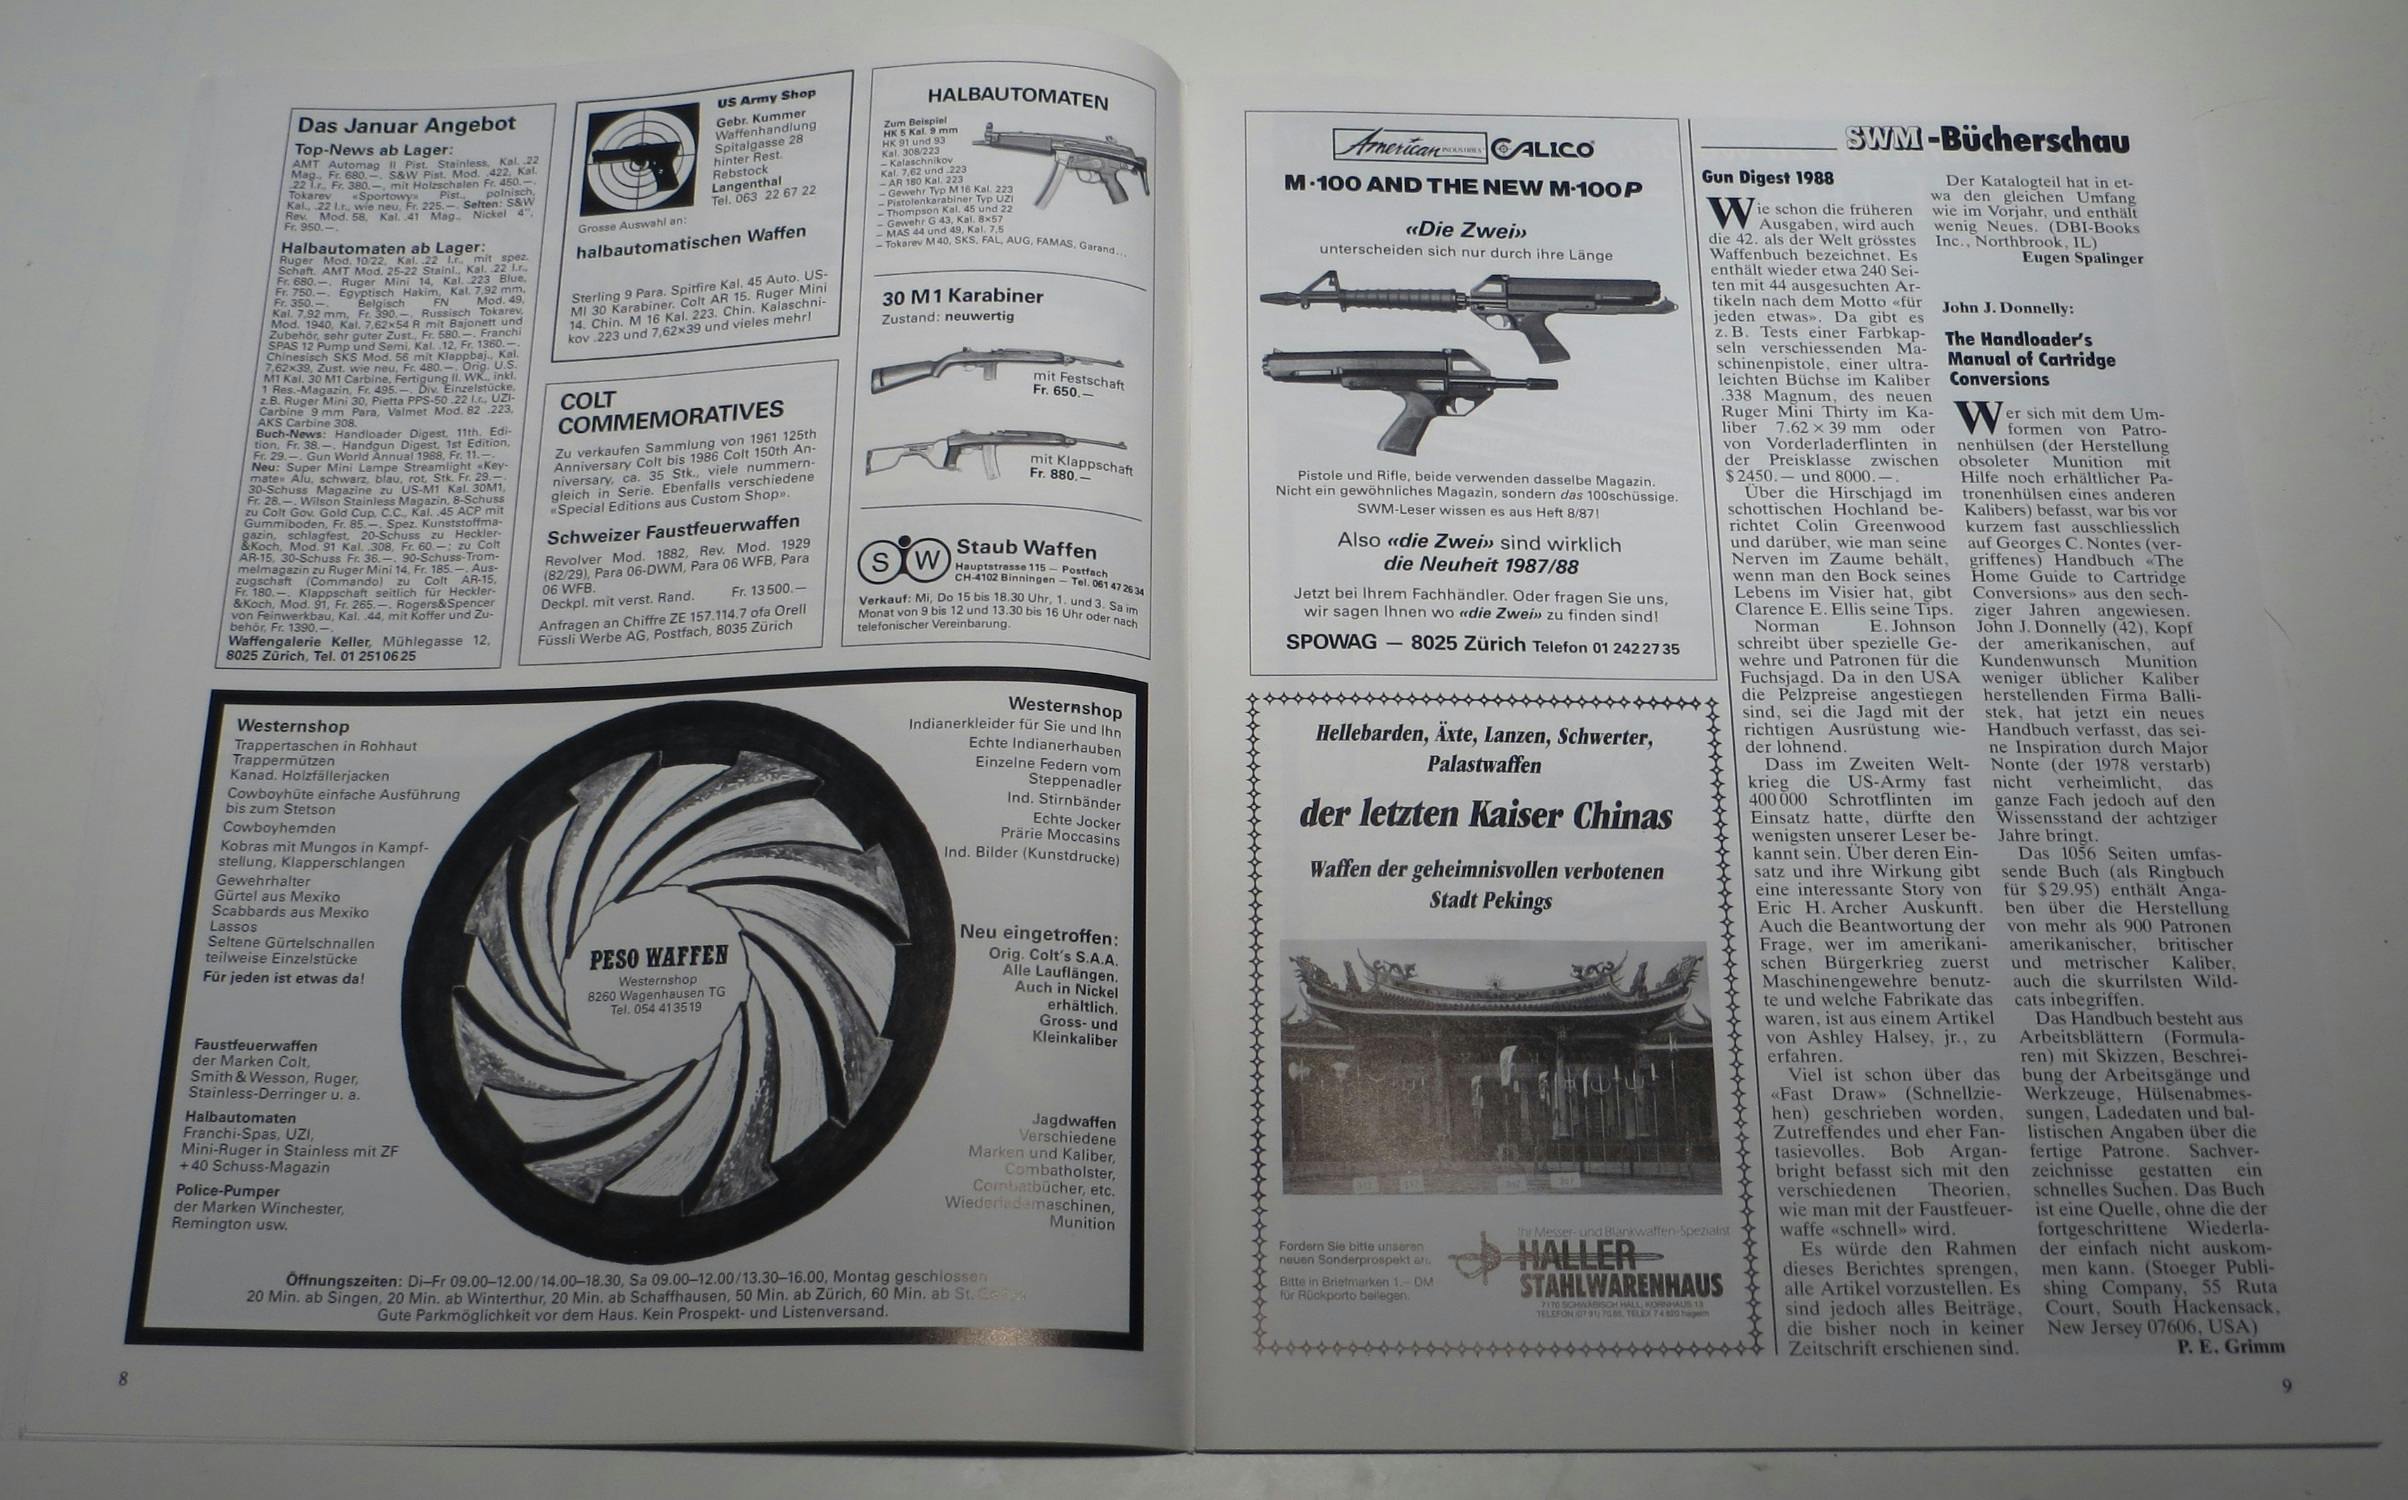 Ahja, die Calico M100 und M100P. 100 Schuss fassendes Magazin und eine berühmt-berüchtigte Unzuverlässigkeit.
